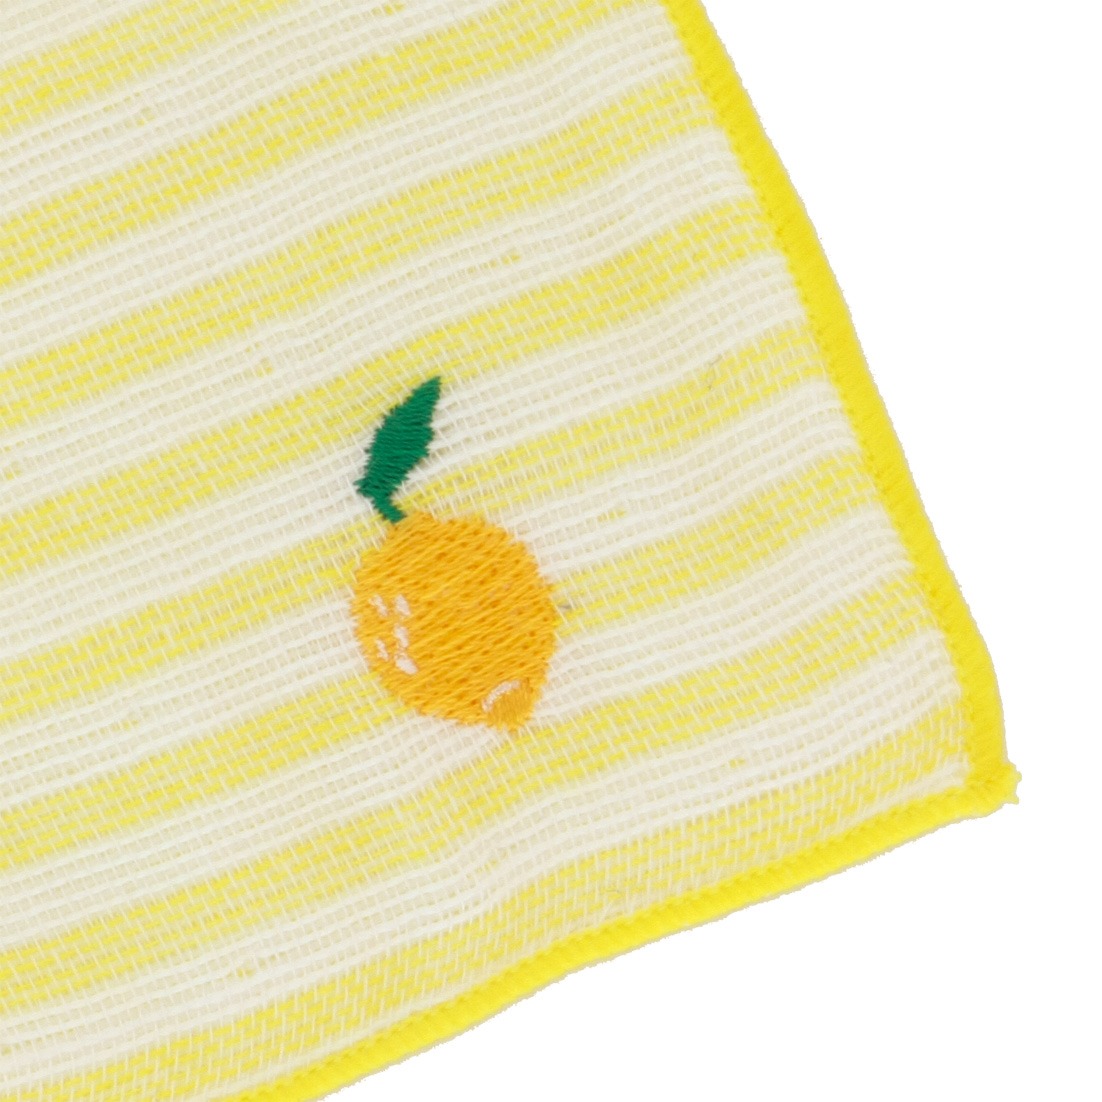 JOGAN 成願 可愛圖案雪糕造型清涼冷感手帕 ICL-052-lemon 檸檬 1條